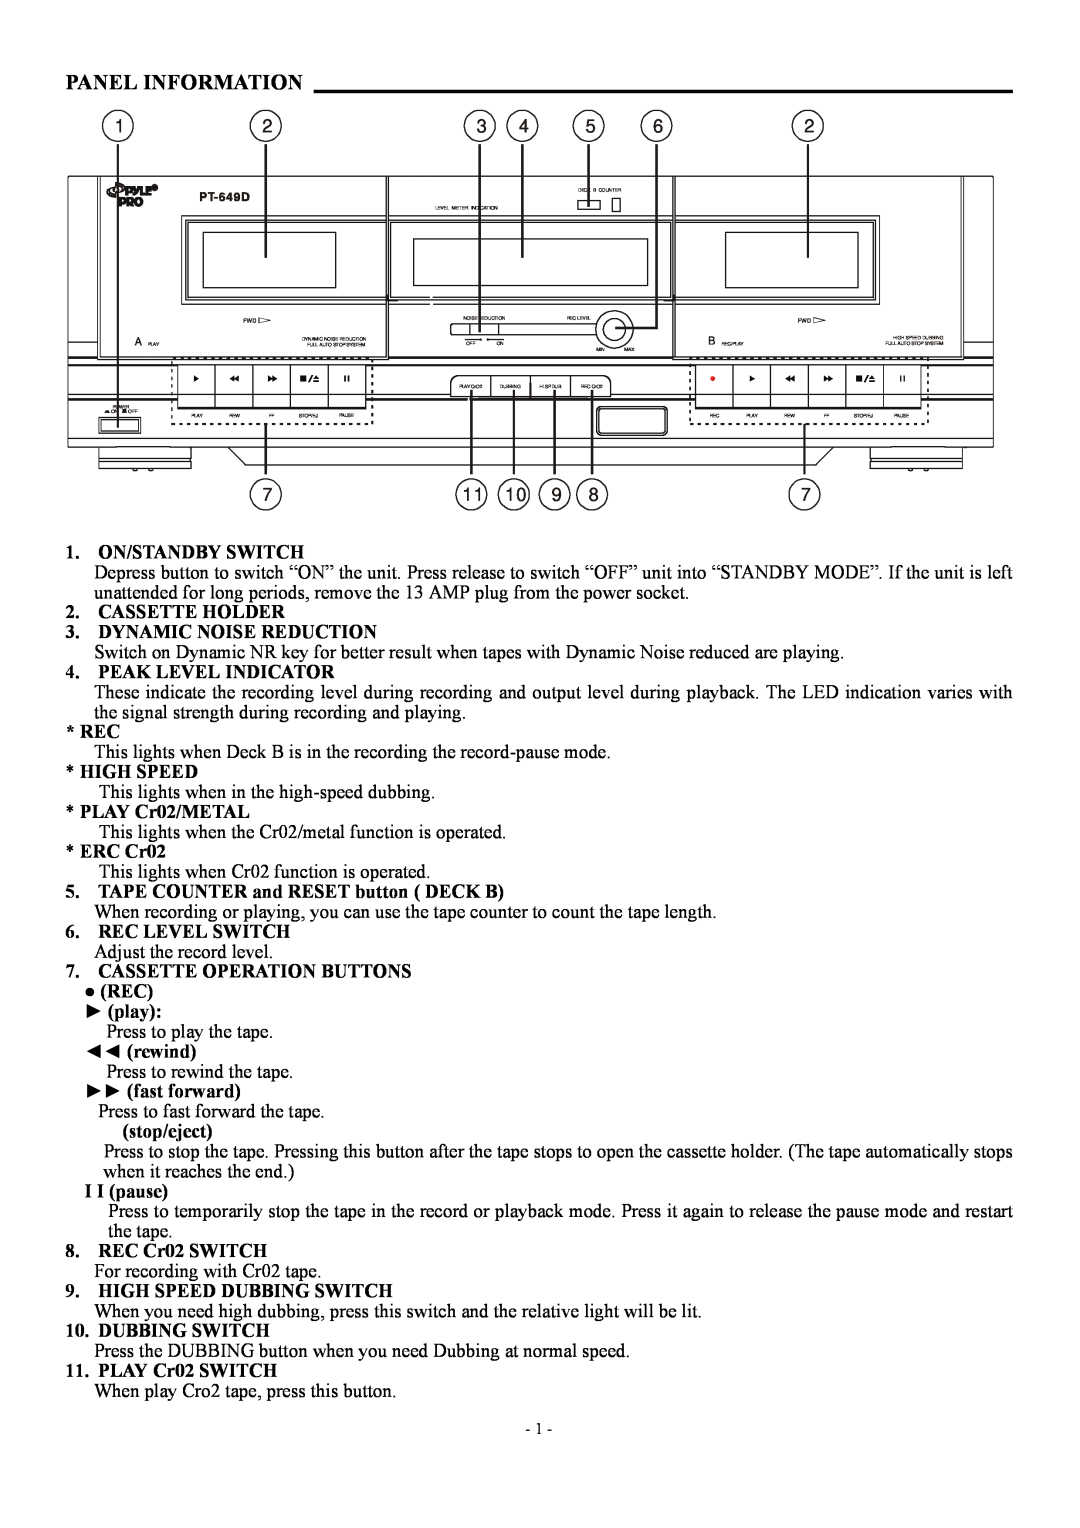 PYLE Audio PT-649D manual Panel Information 